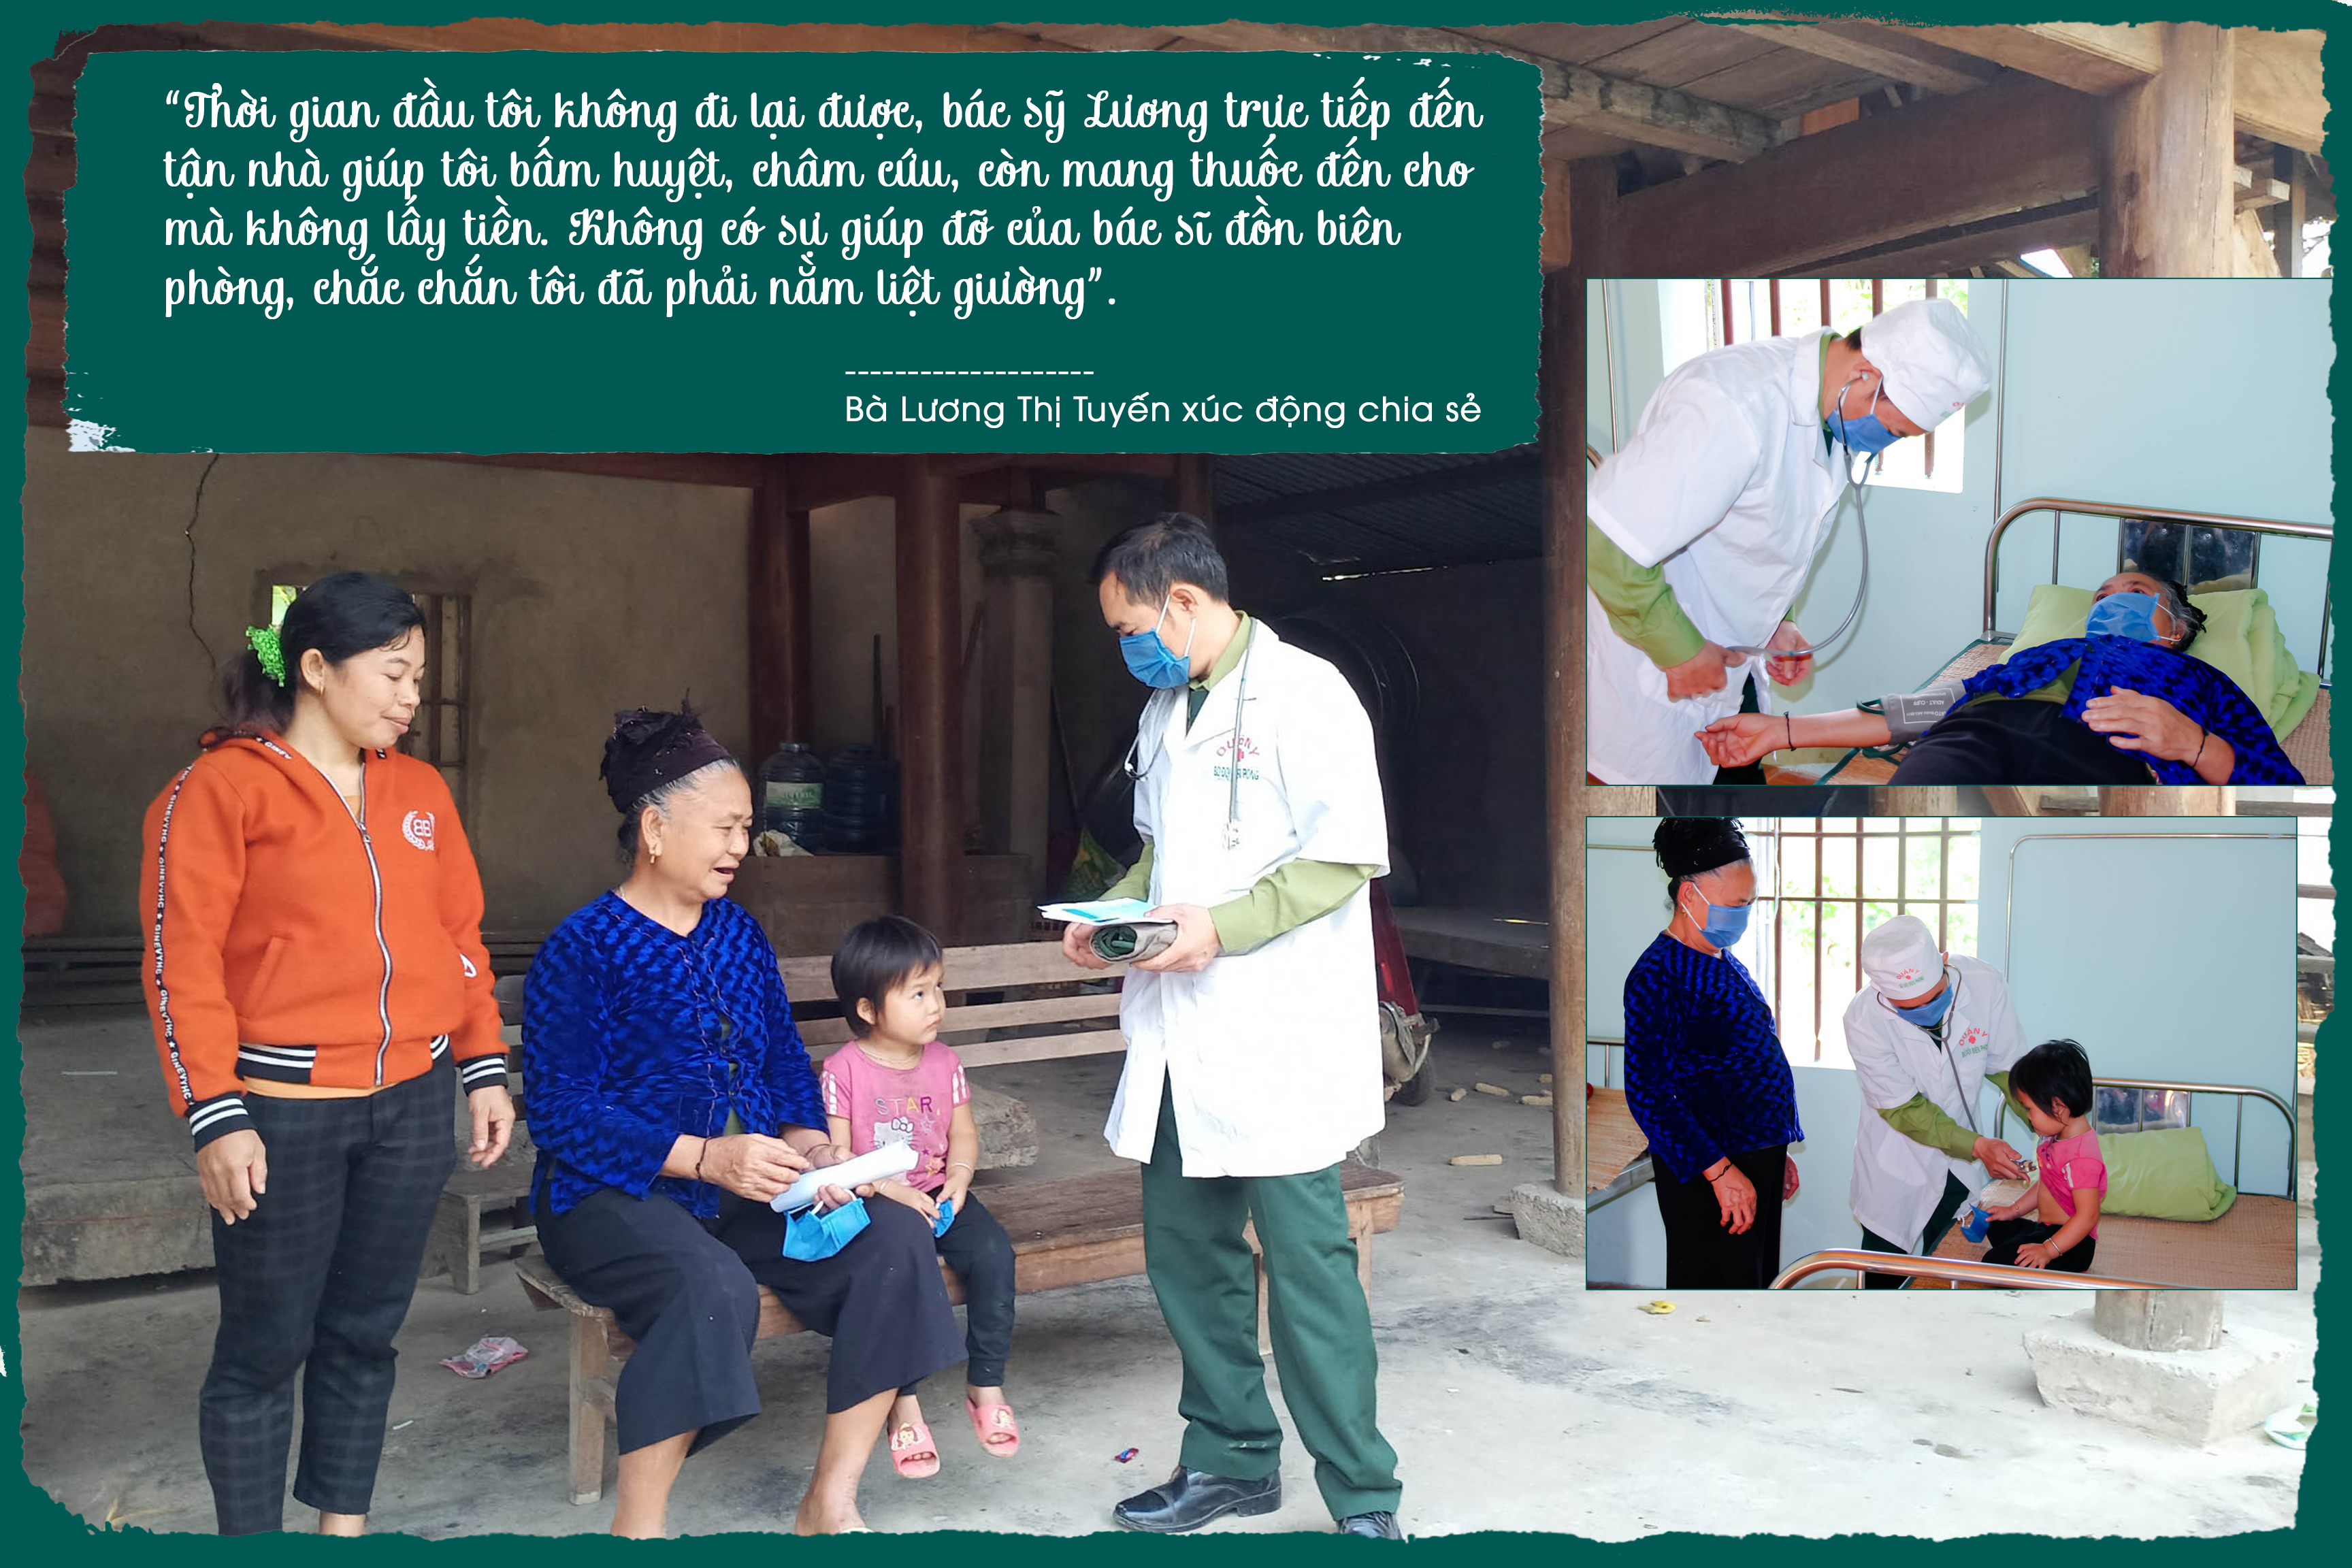  Bác sĩ quân y Đồn Biên phòng Phúc Sơn Nguyễn Bá Lương thăm khám bệnh cho người dân bản Cao Vều 1.